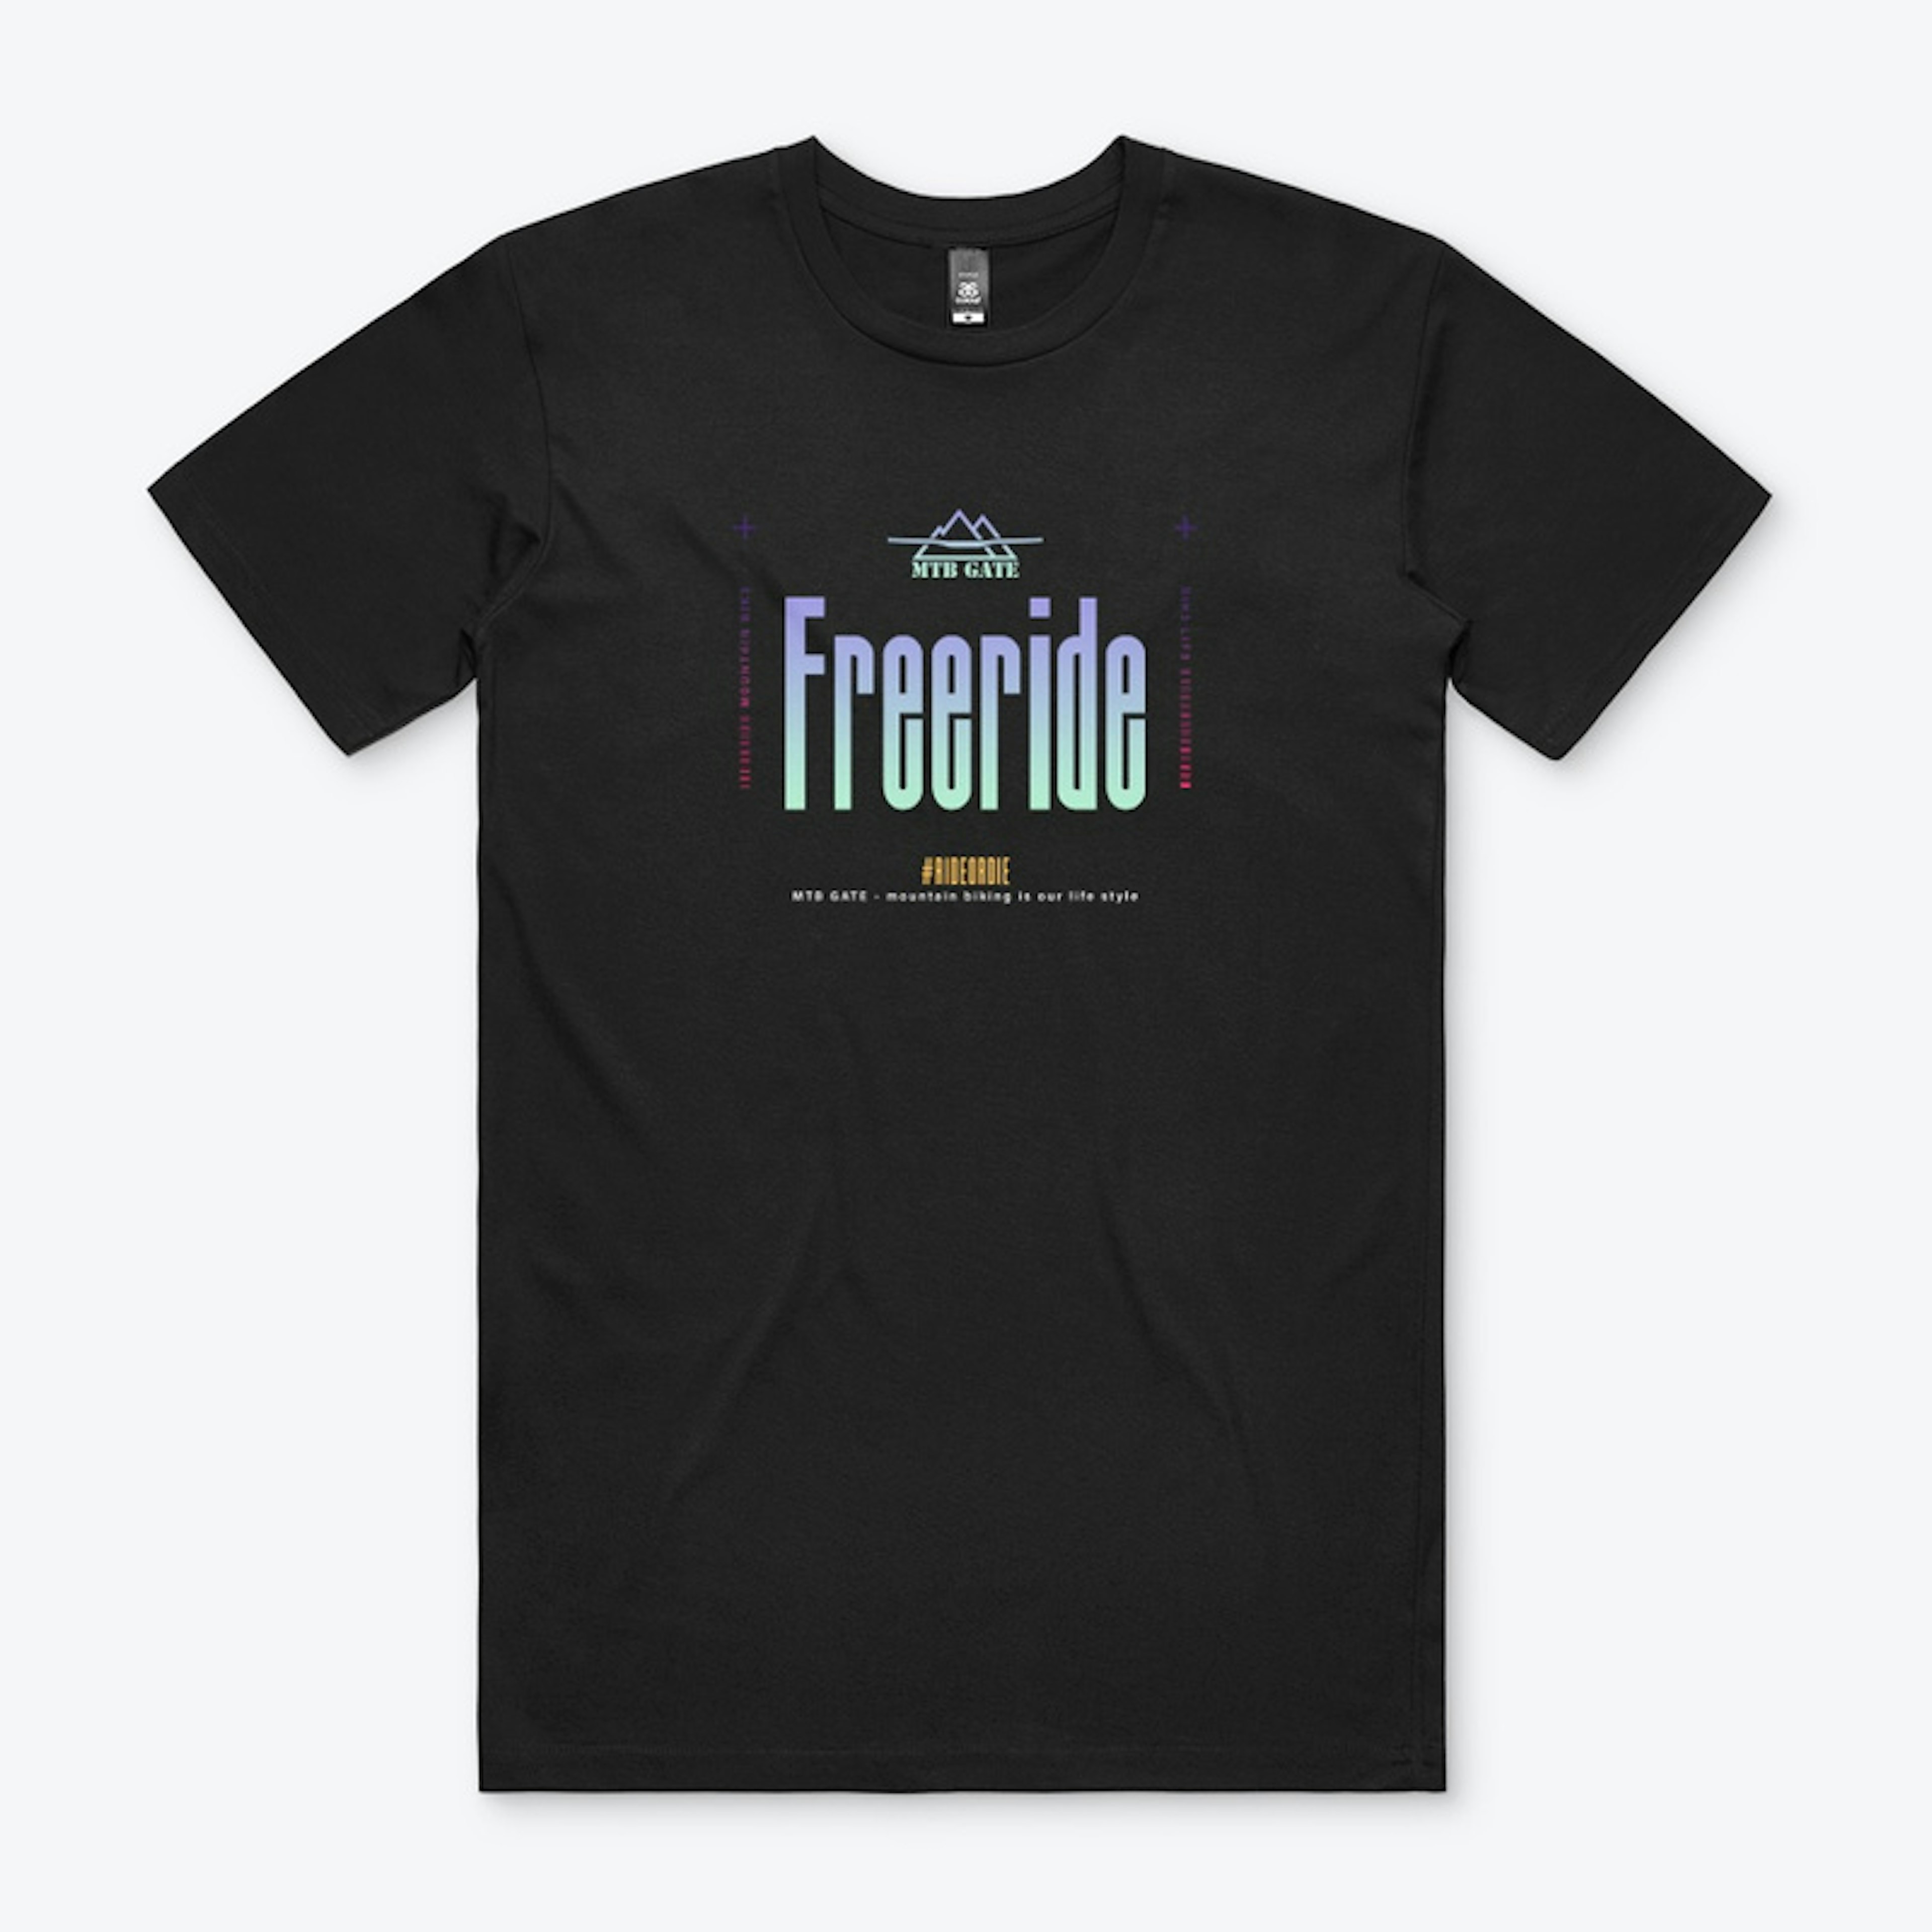 Freeride is you life style